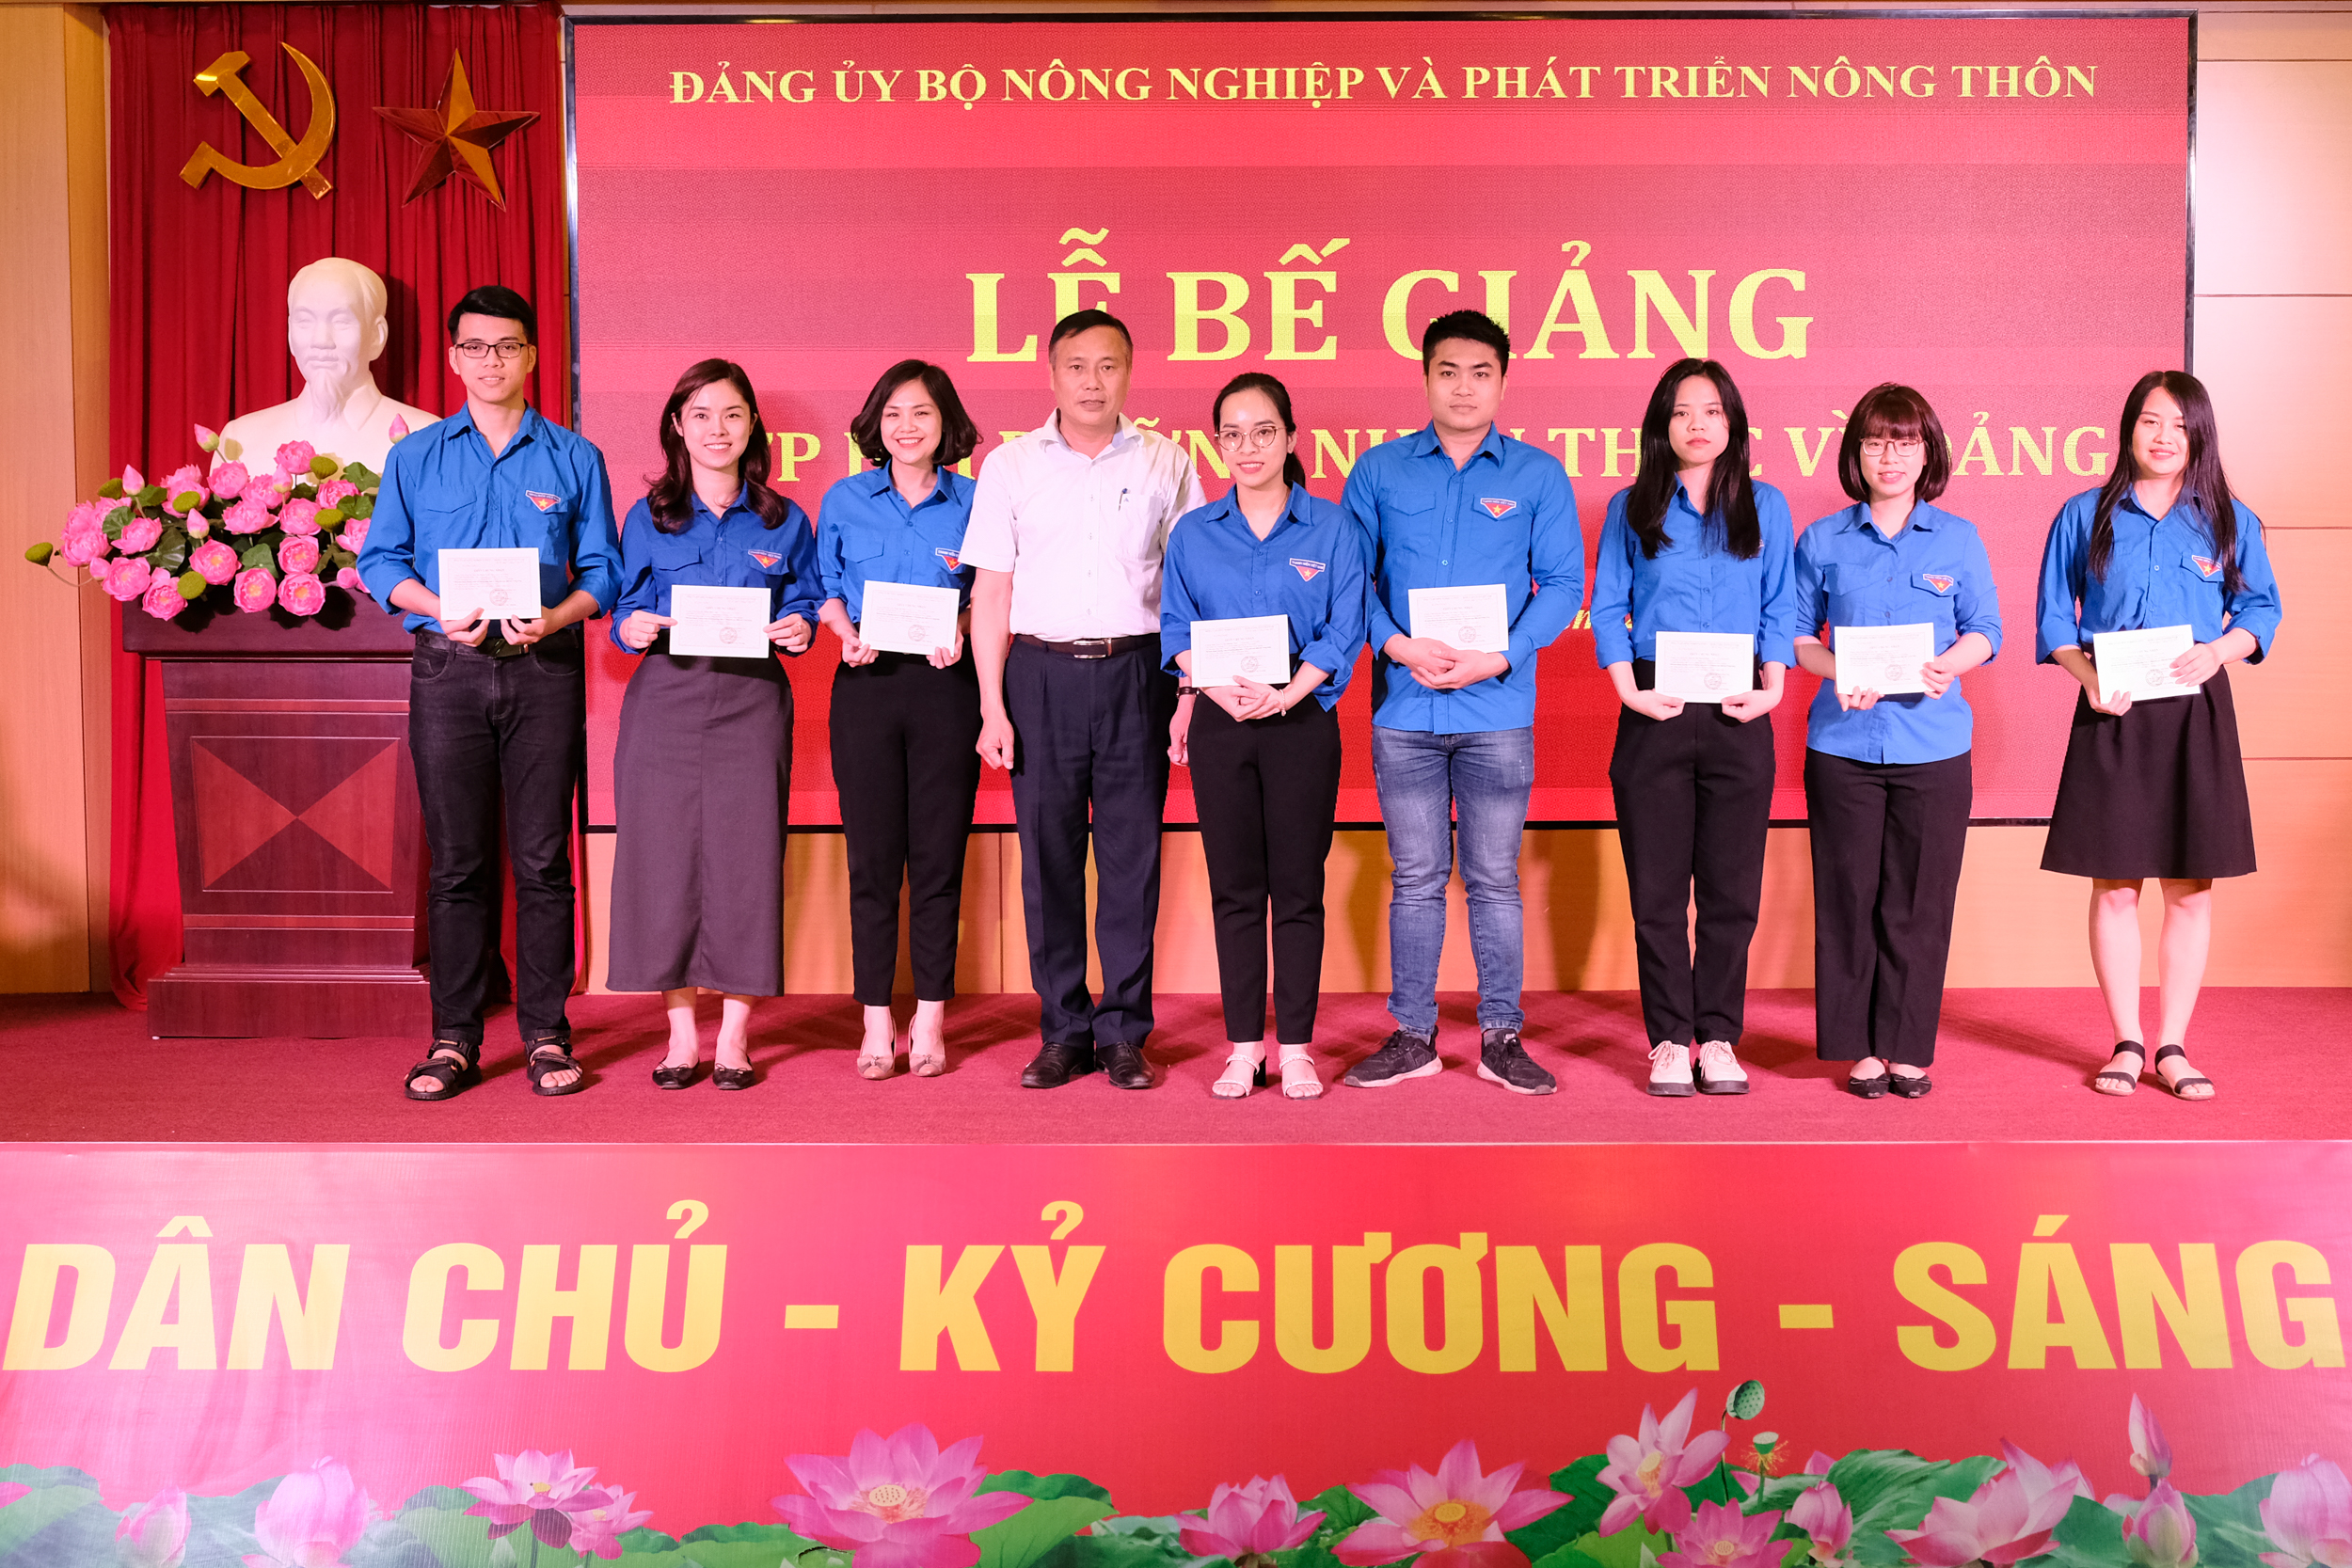 100% học viên của lớp được cấp Giấy chứng nhận hoàn thành chương trình Bồi dưỡng nhận thức về Đảng. Ảnh: Tùng Đinh.